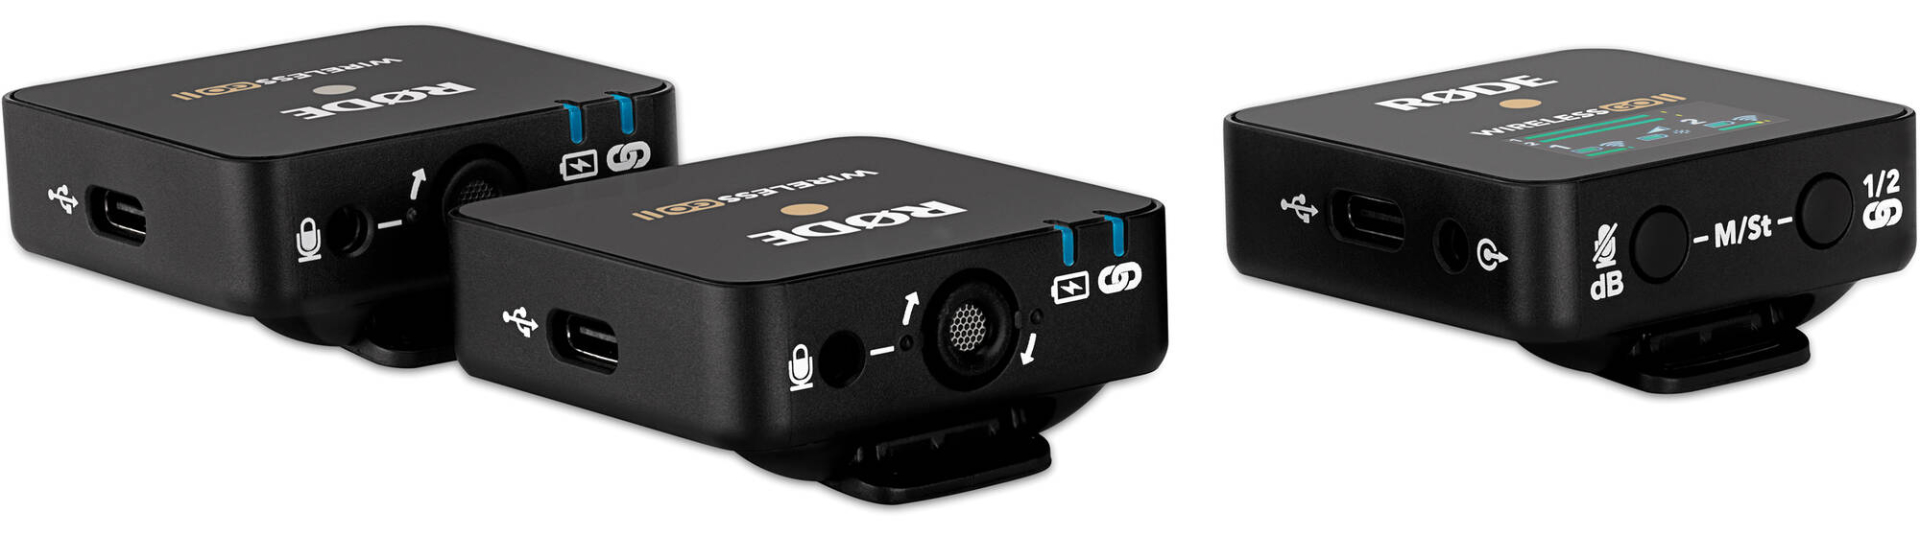 RØDE Wireless Go II Sistema inalámbrico de doble canal con micrófonos  integrados con salidas USB analógicas y digitales, compatible con cámaras